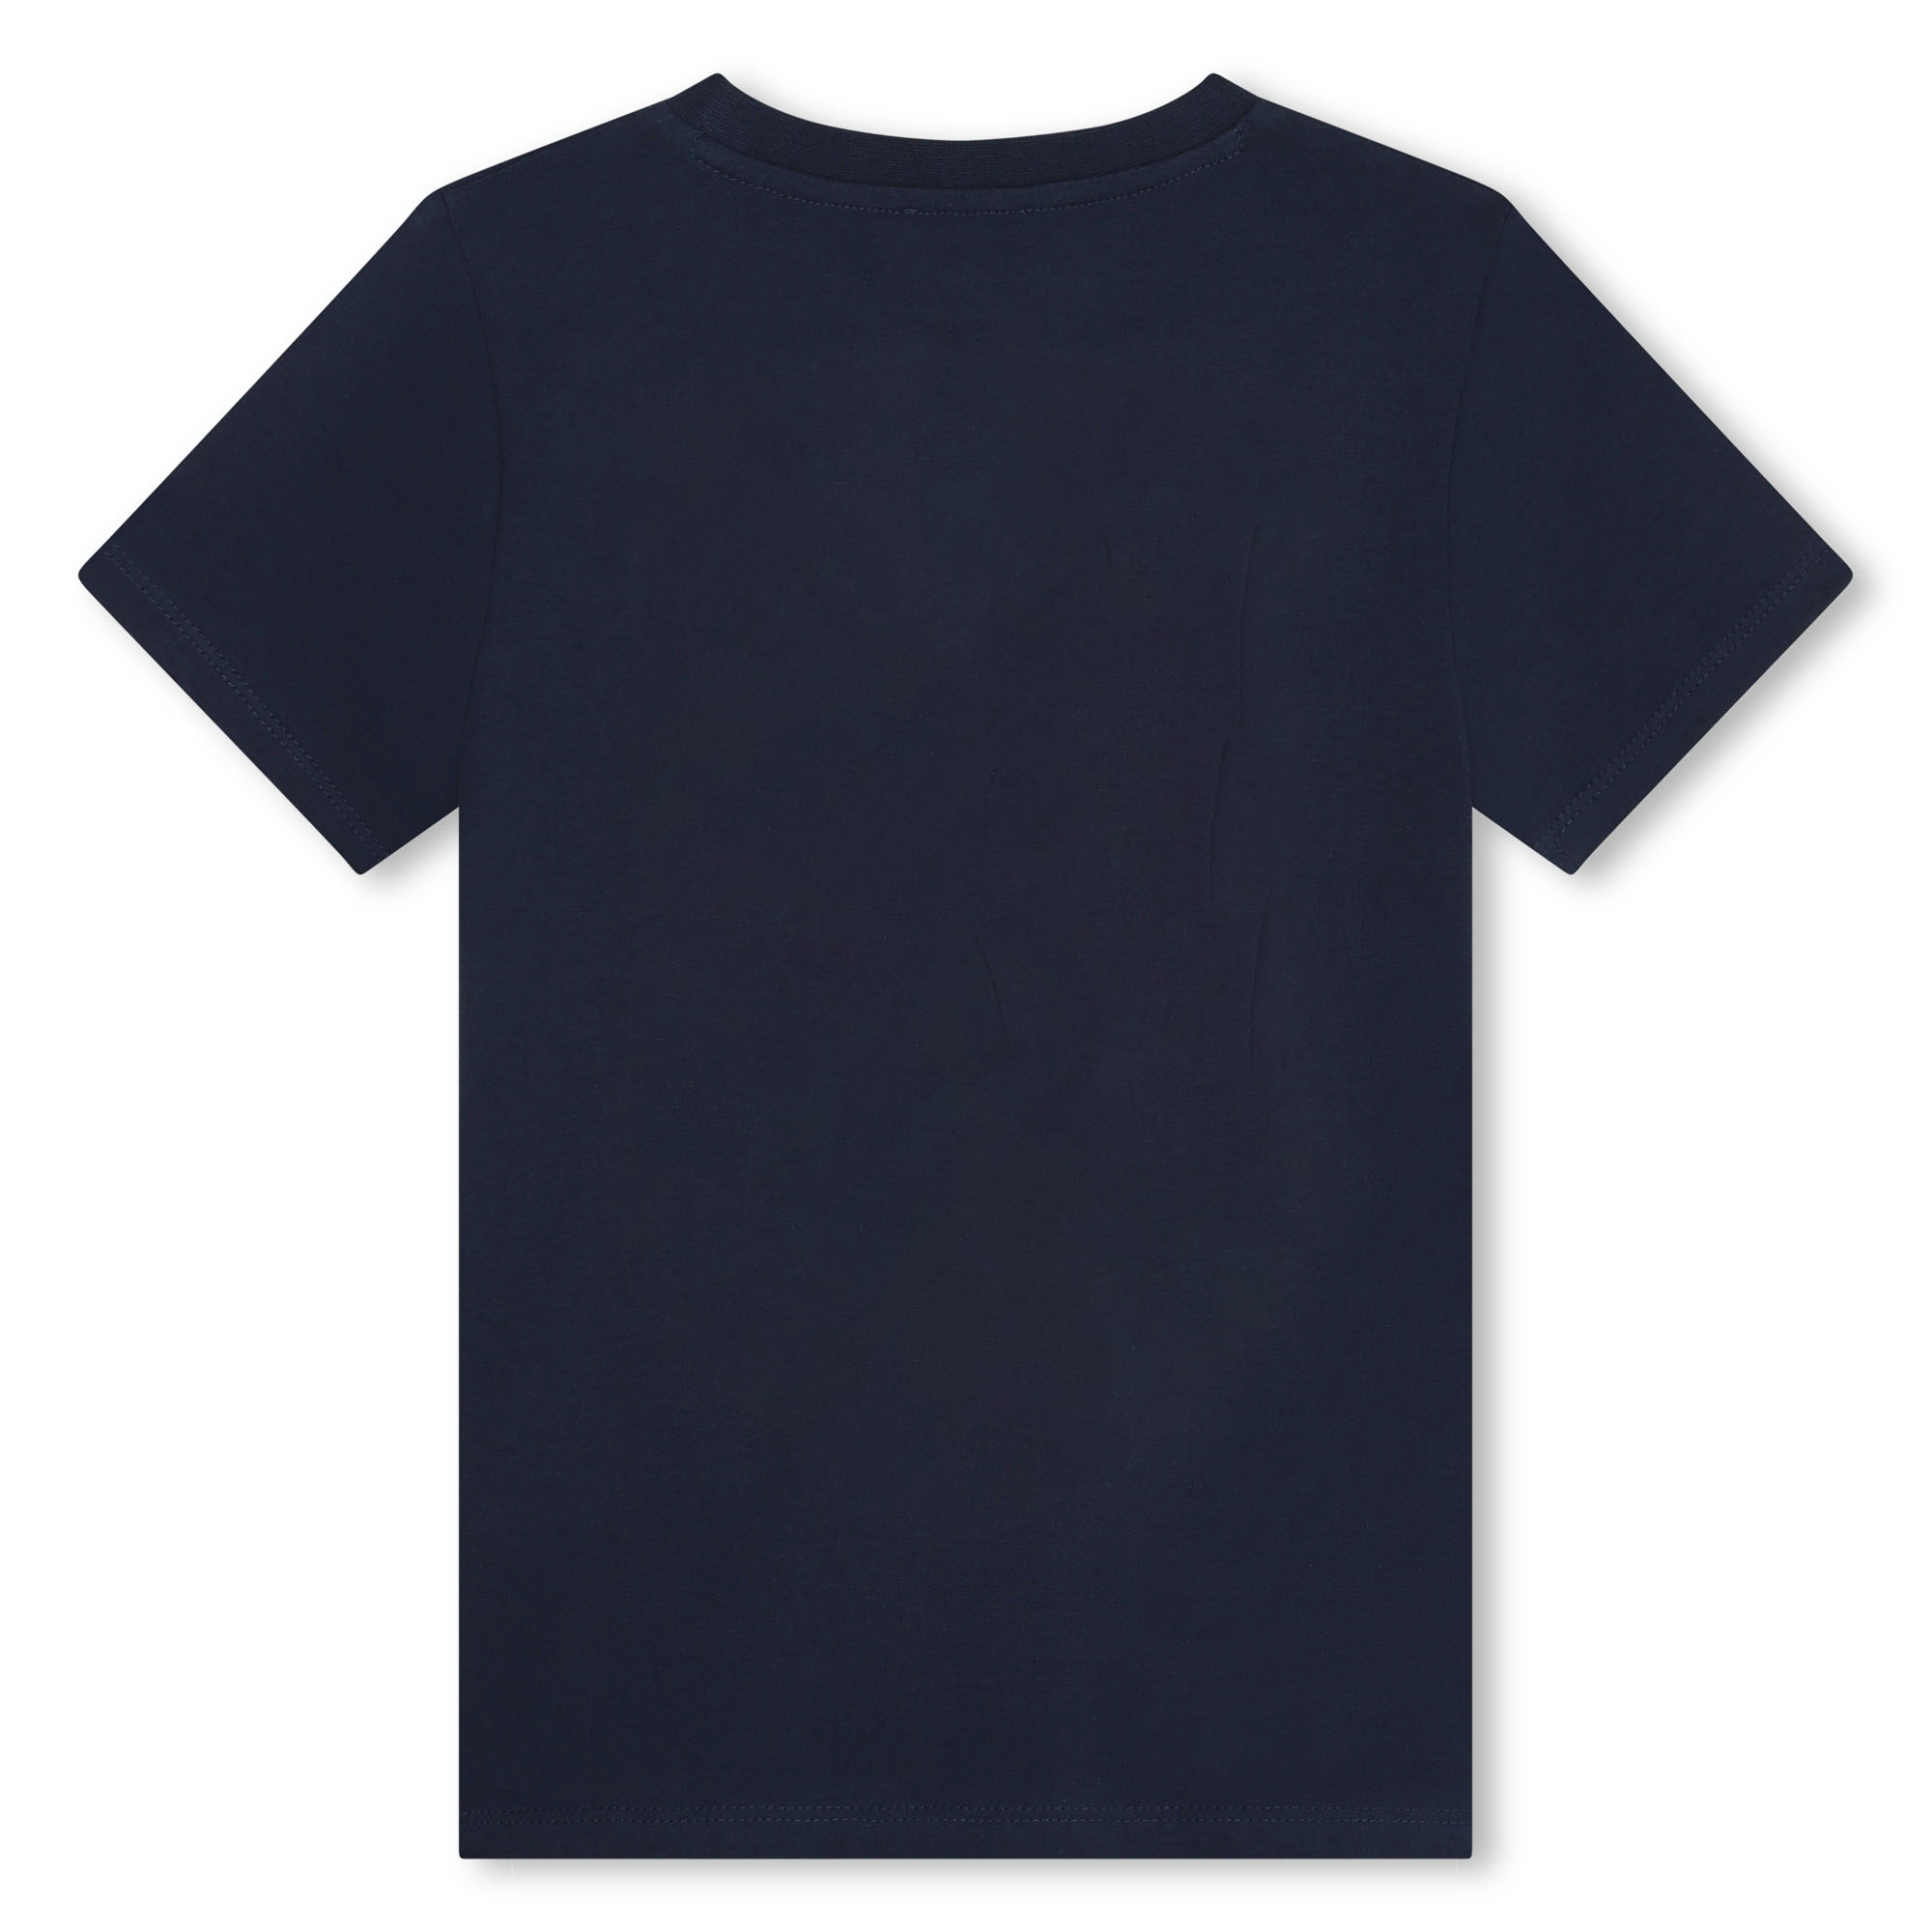 Kurzärmliges Baumwoll-T-Shirt KENZO KIDS Für UNISEX